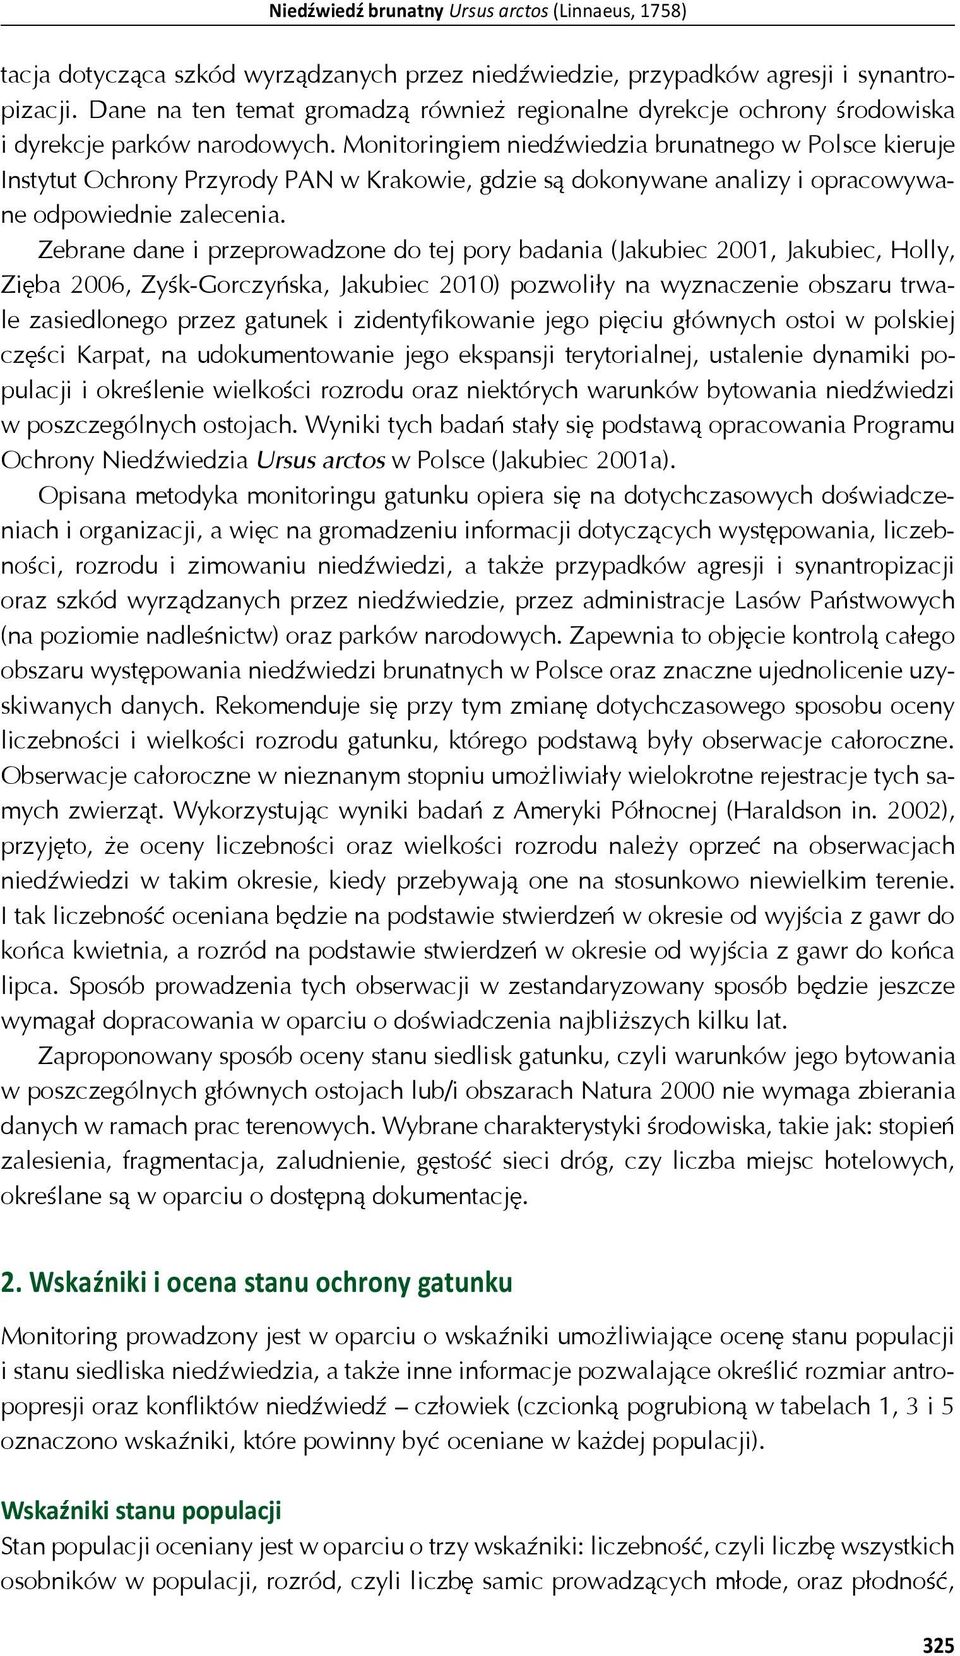 Monitoringiem nied wiedzia brunatnego w Polsce kieruje Instytut Ochrony Przyrody PAN w Krakowie, gdzie s dokonywane analizy i opracowywane odpowiednie zalecenia.